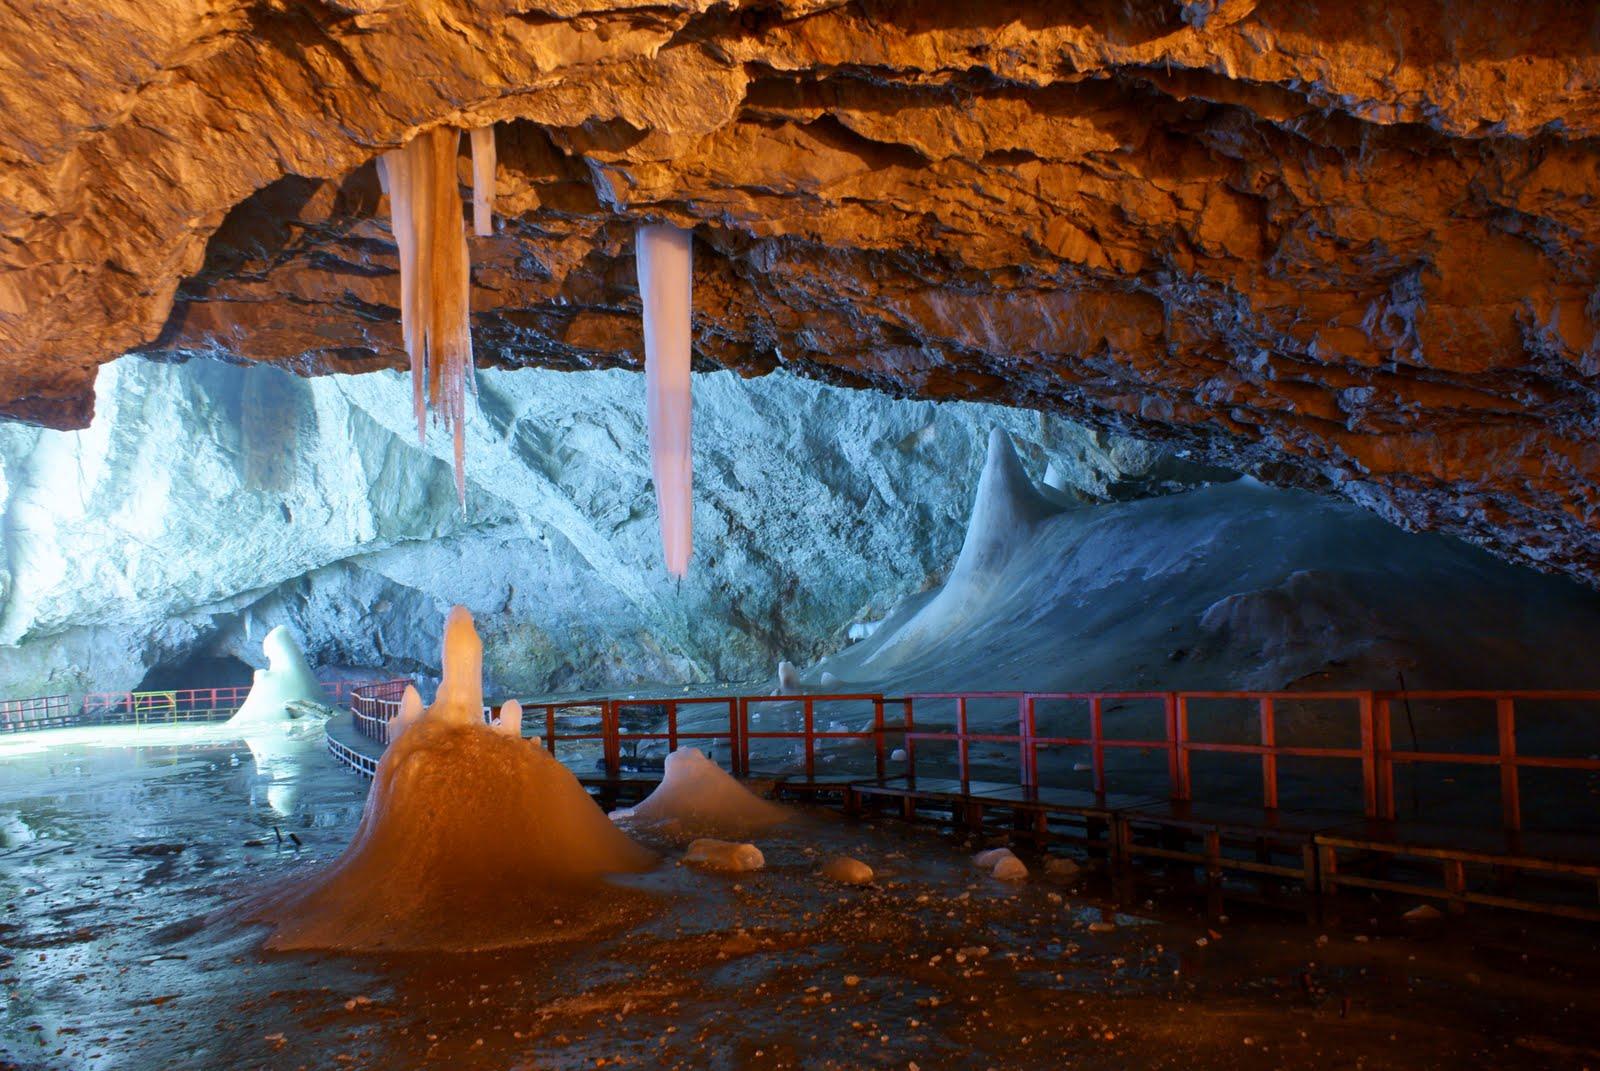 Scărișoara Ice Cave